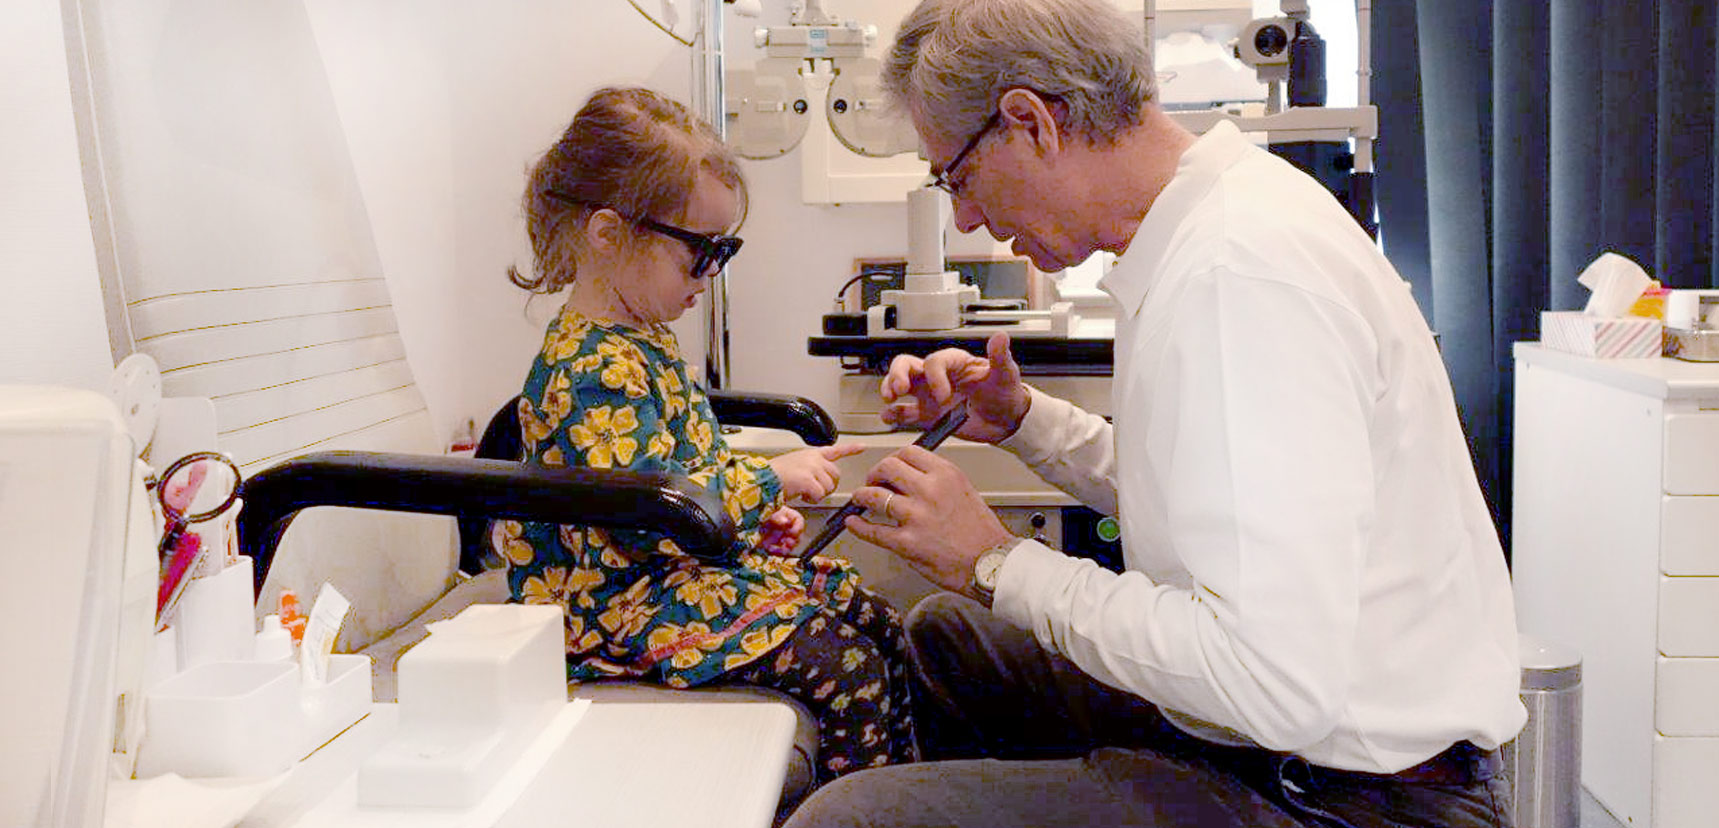 Dr. Martin Heidemann, Augenarzt im Team der Praxis Augenheilkunde am Europaplatz, Untersuchung eines Kindes